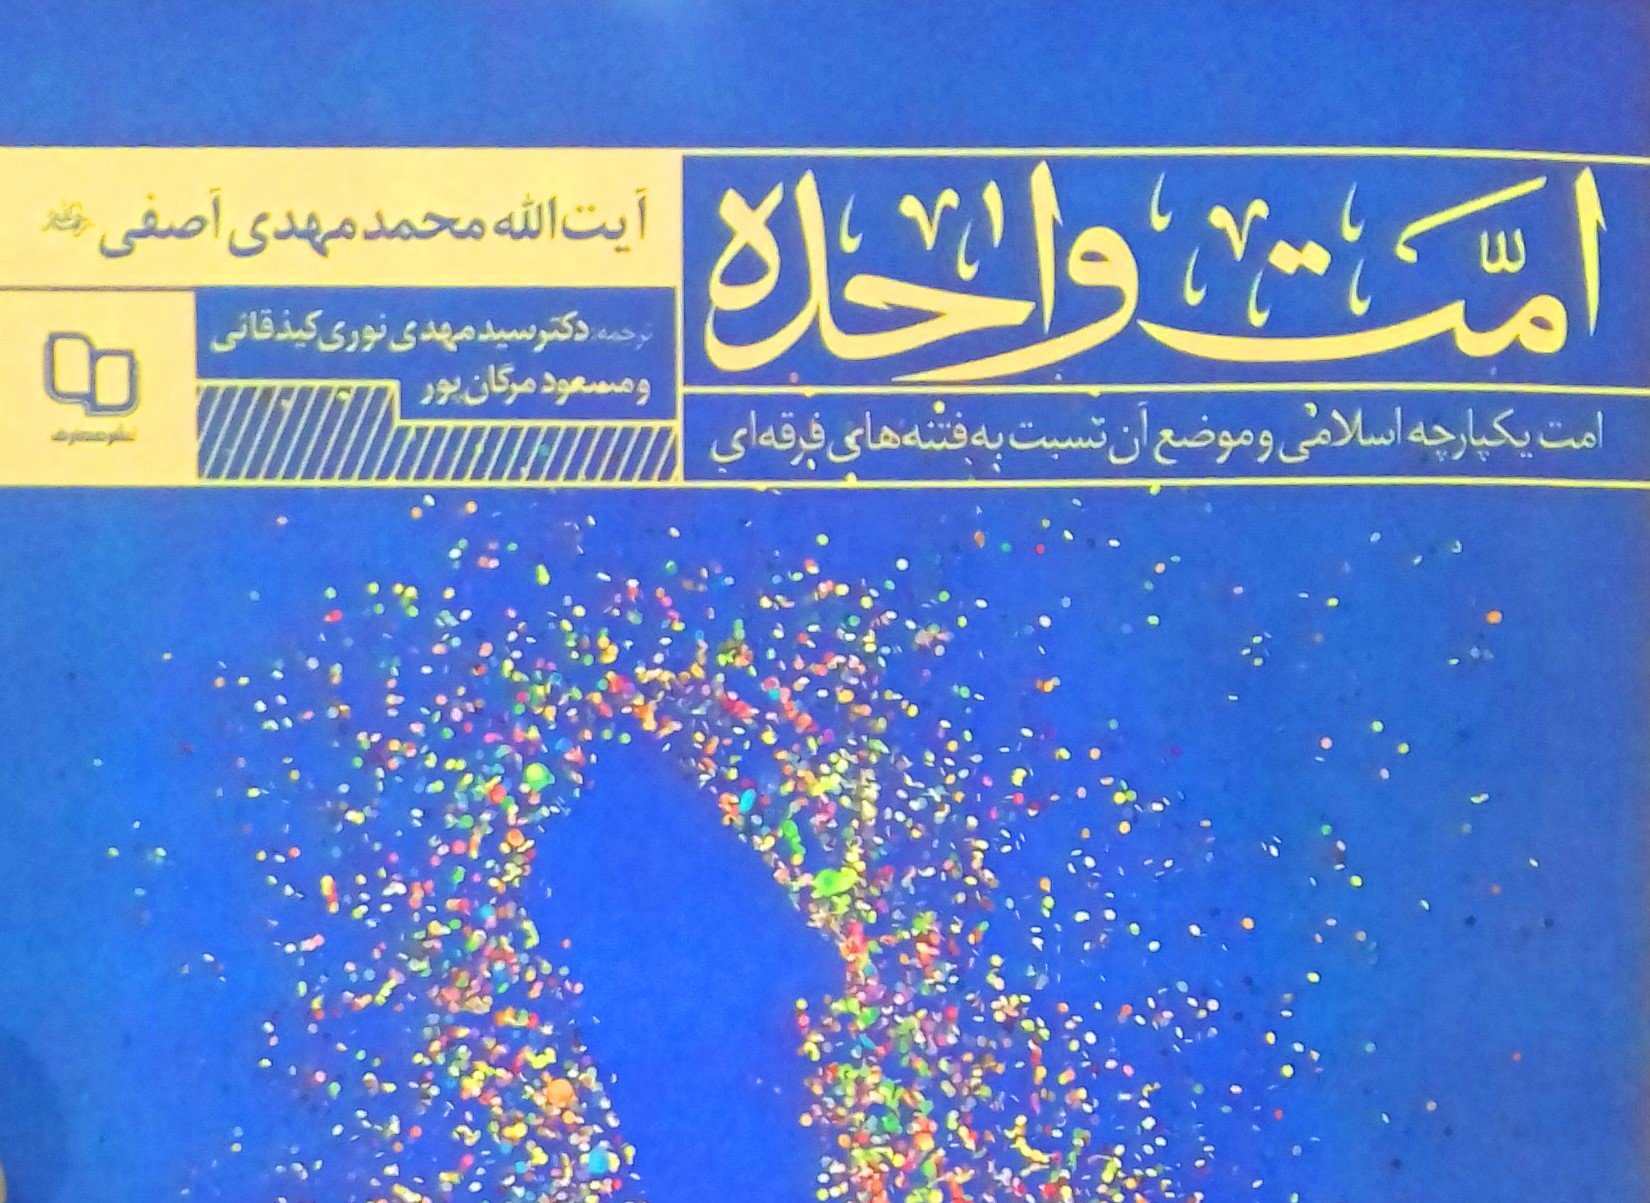 کتاب «امت واحده» ترجمه و به بازار نشر رسید